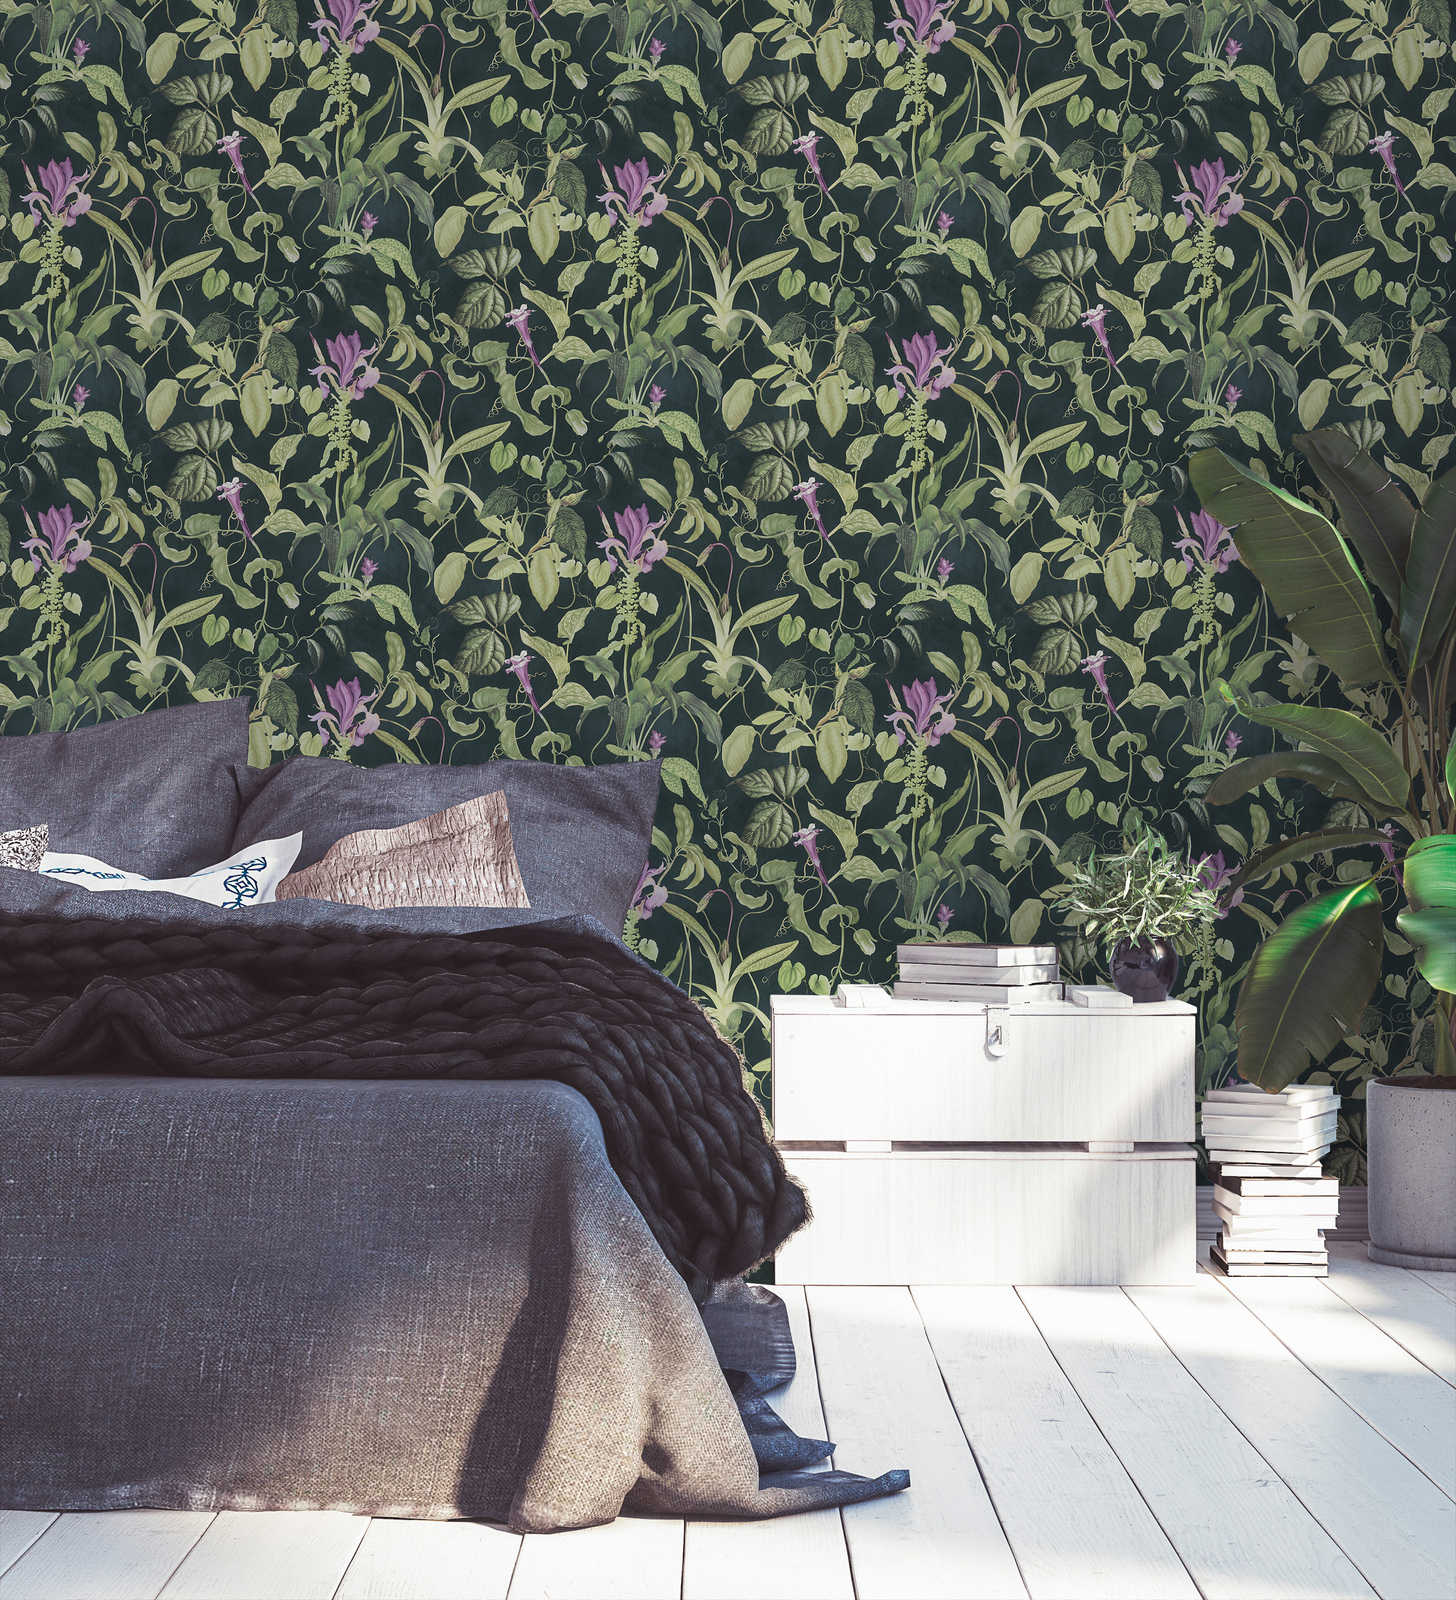             Tropisch bloemenbehang Design by MICHALSKY - Groen, Zwart
        